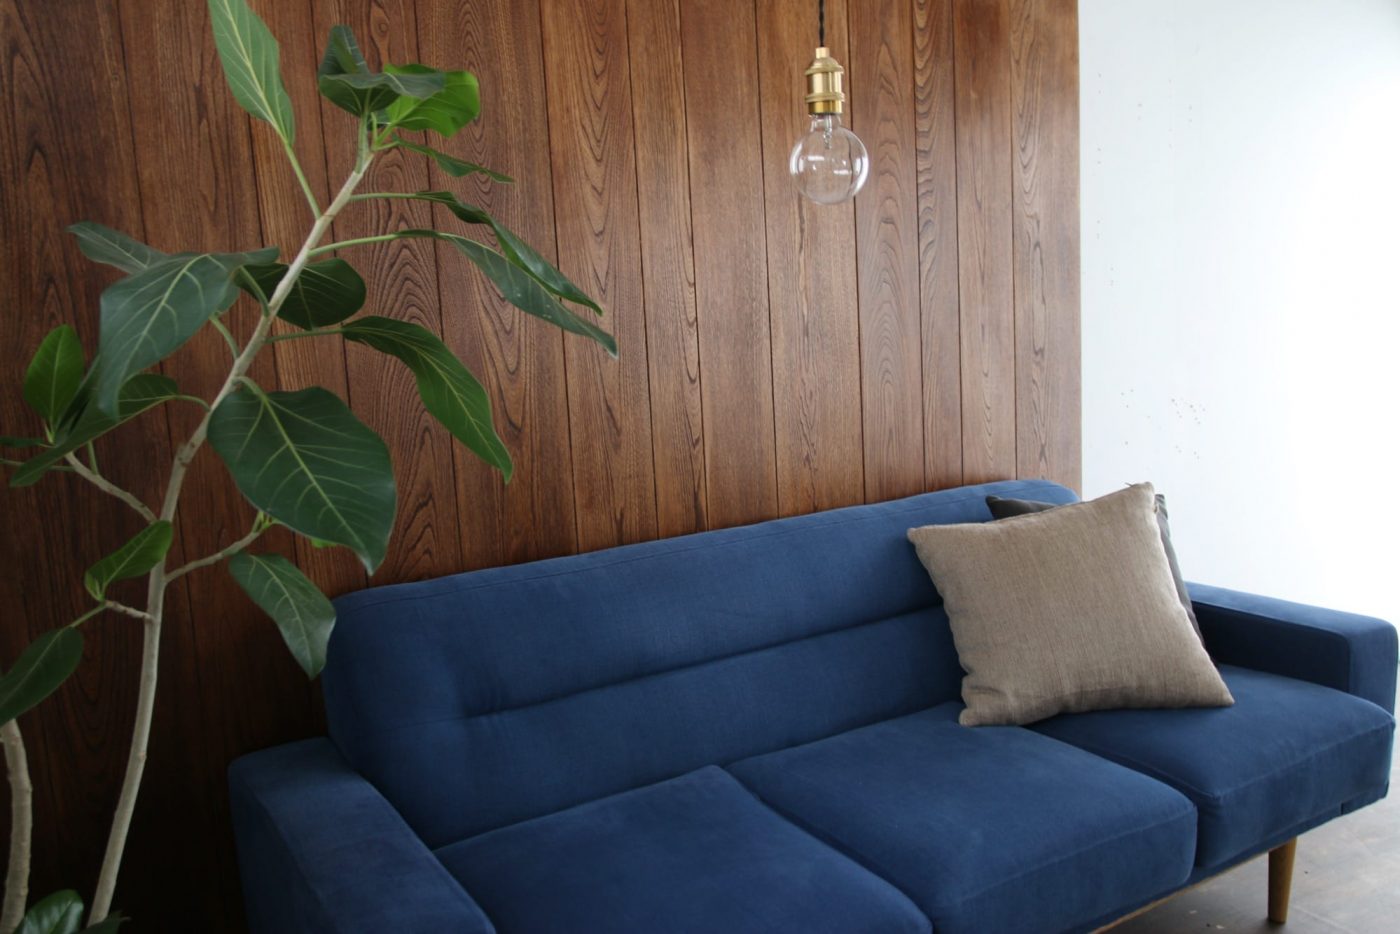 落ち着いた色味の家具や真鍮素材で上質な空間に。（ニレ 無塗装にBRIWAXチークで着色）
